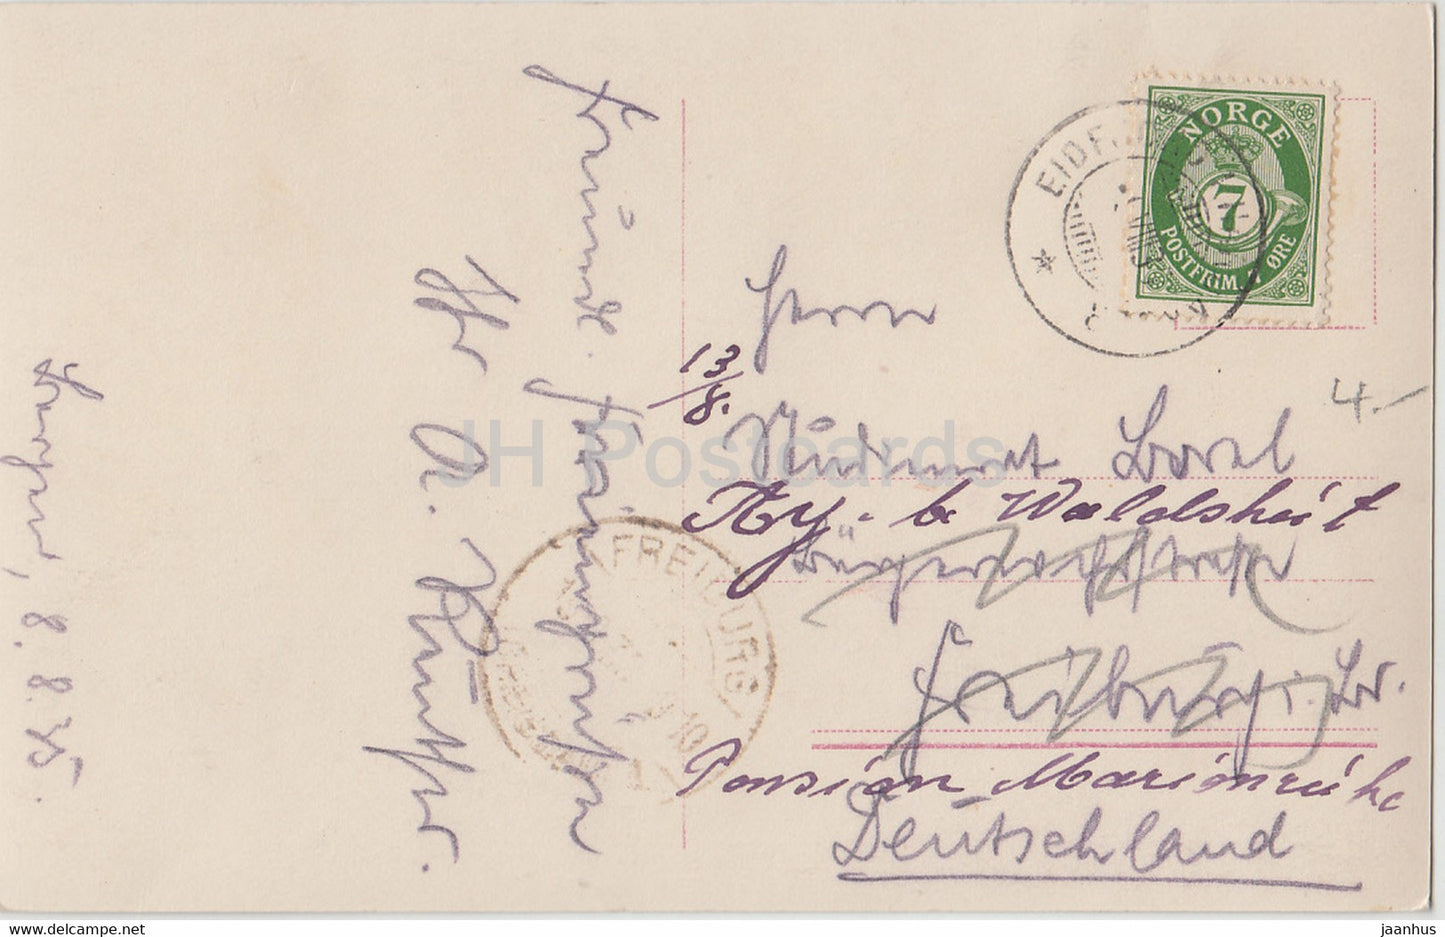 Bergen - Intérieur Haakonshallen - carte postale ancienne - 1935 - Norvège - utilisé